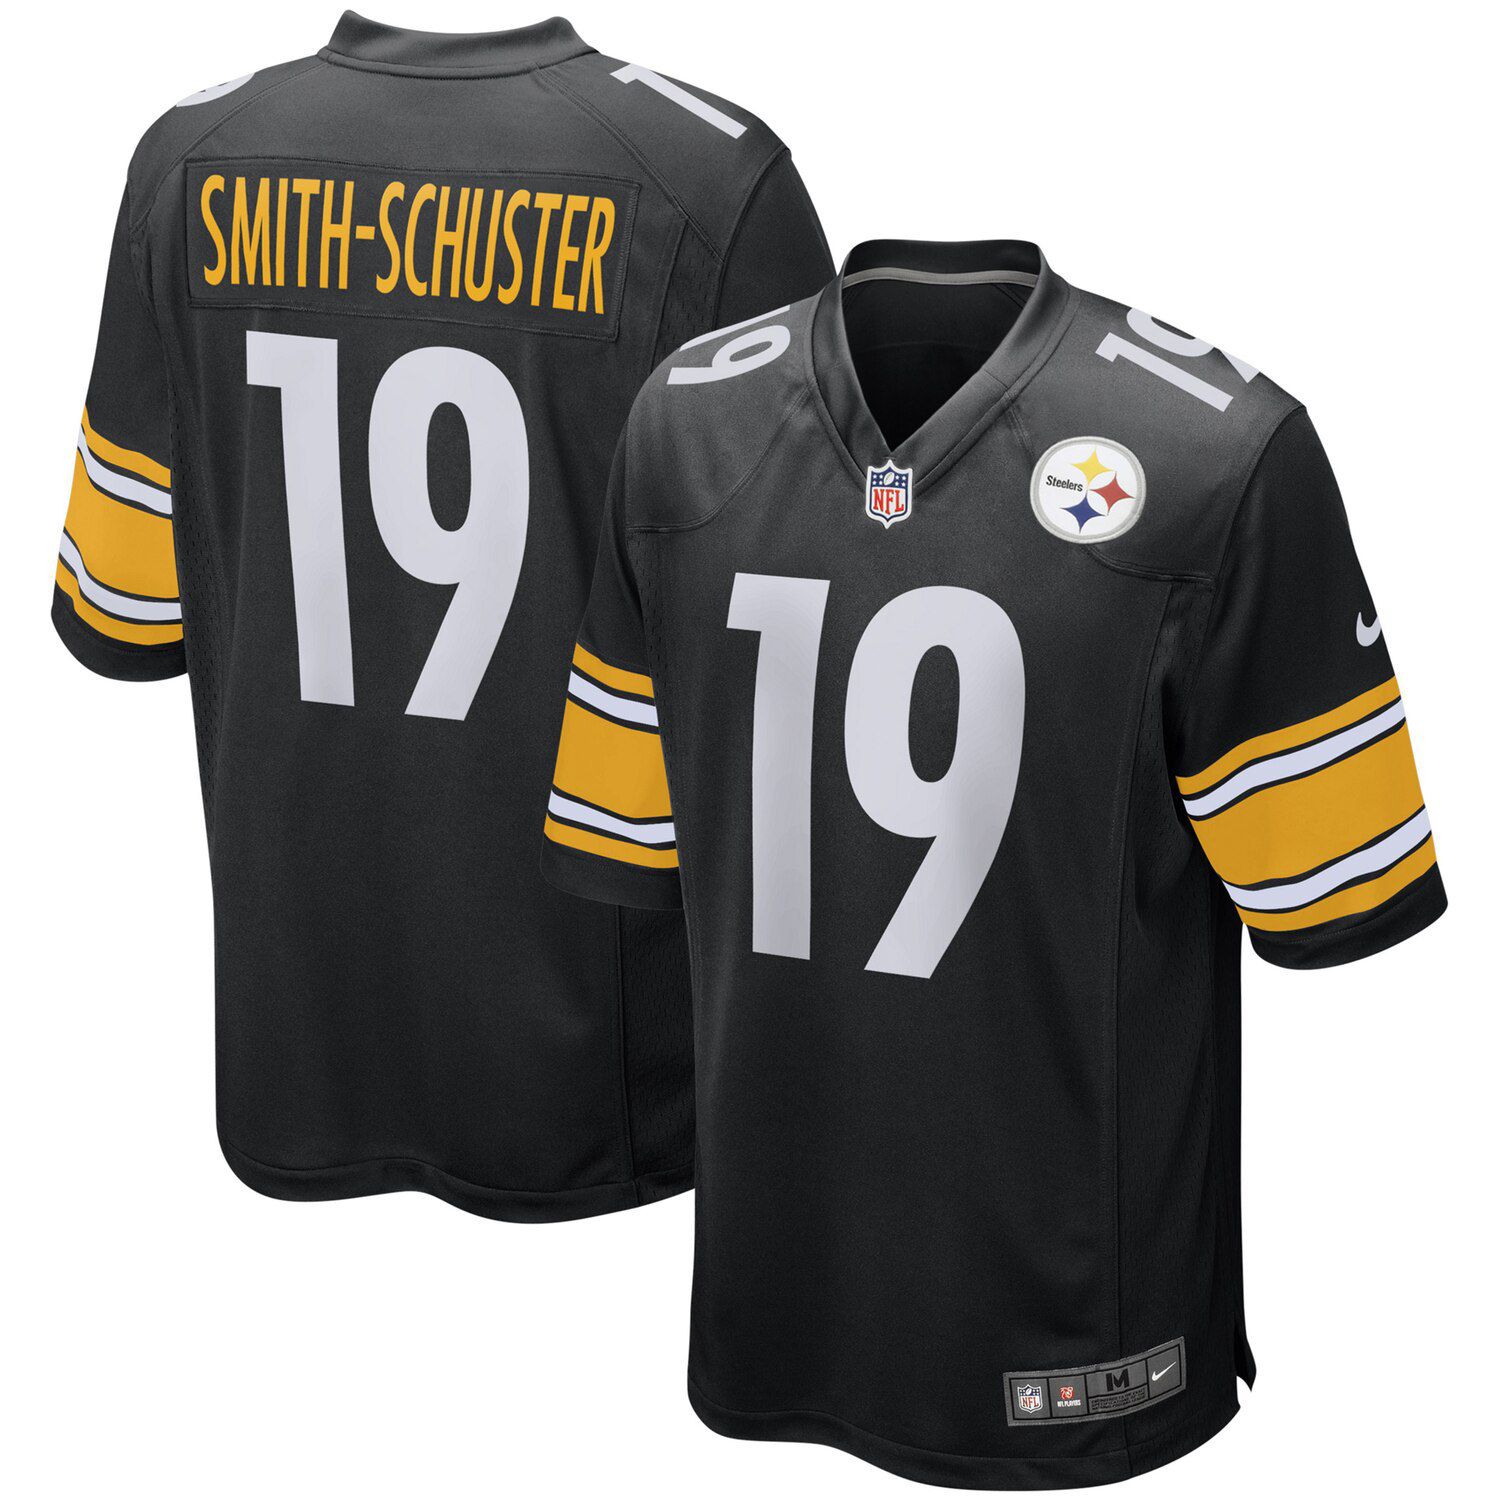 Pittsburgh Steelers Gear, Steelers 